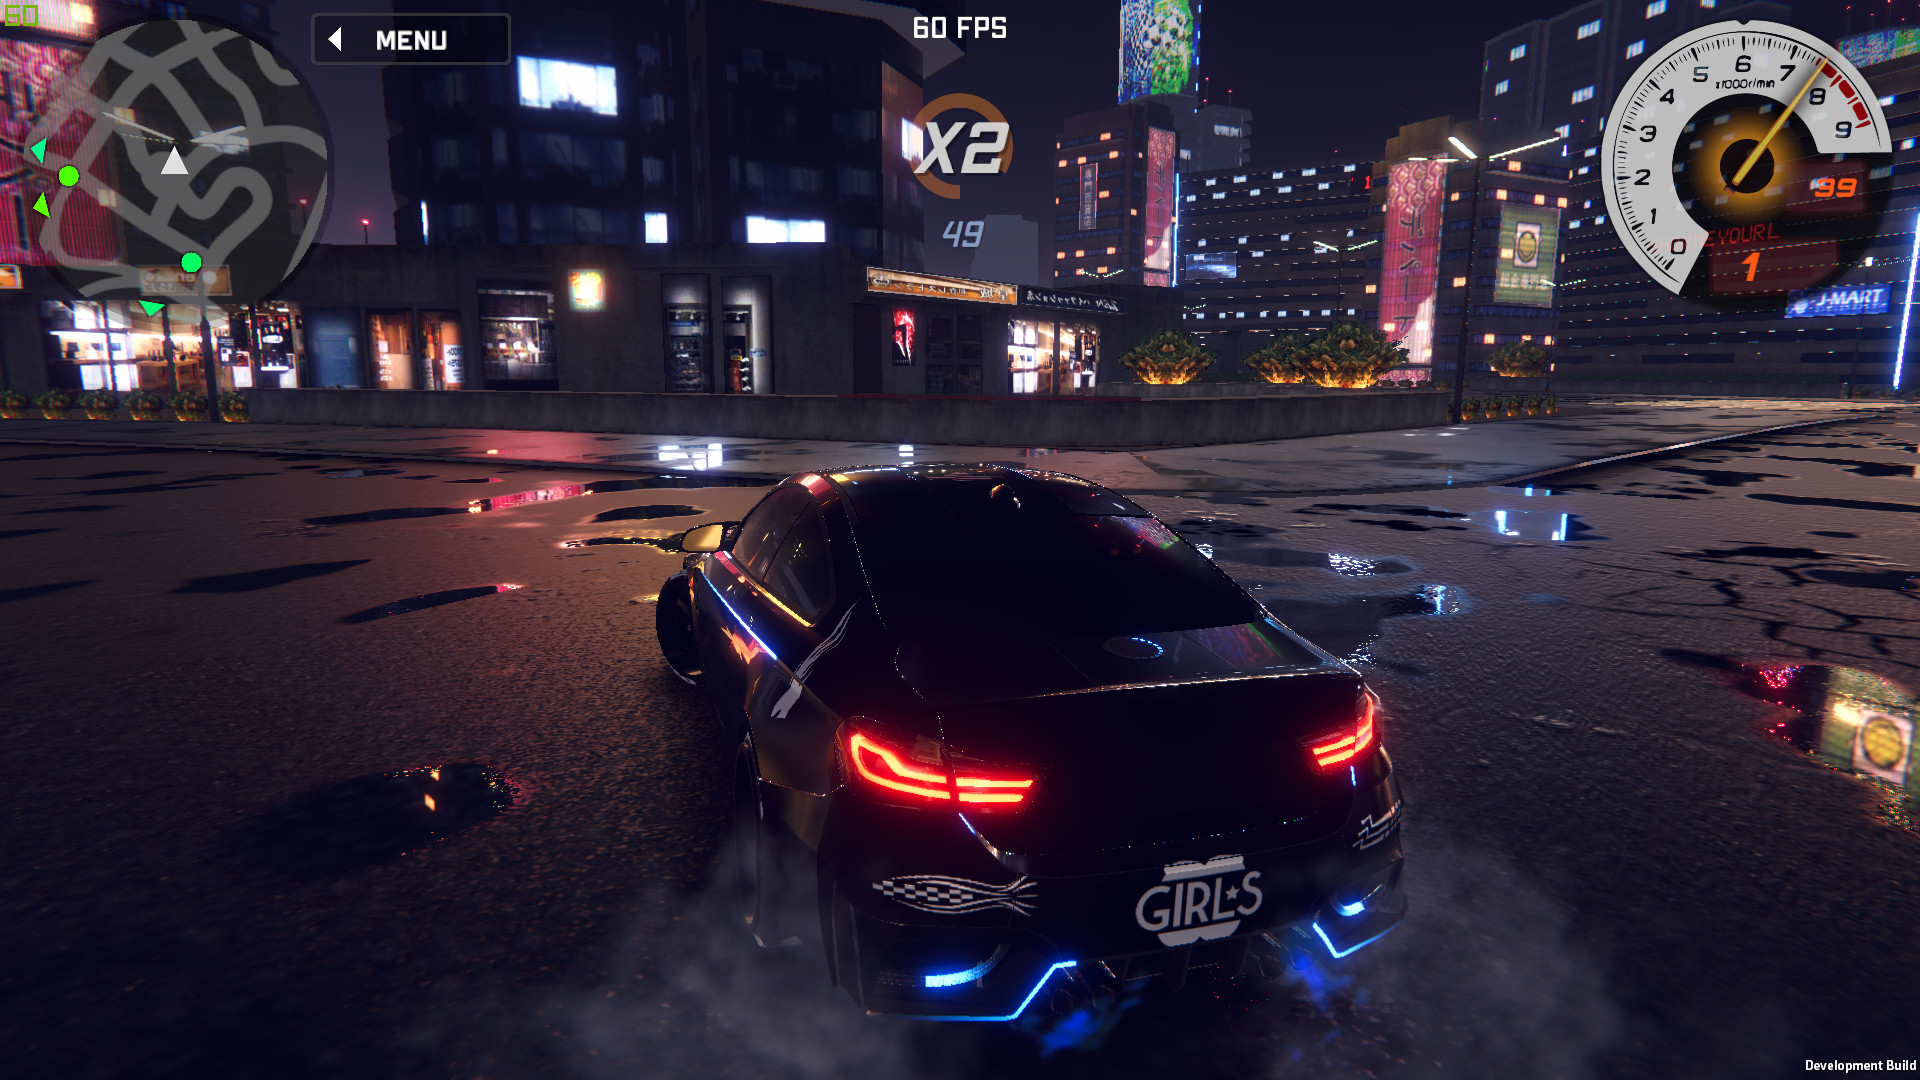 City Racing Lite é um game de corrida OFFLINE com multiplayer